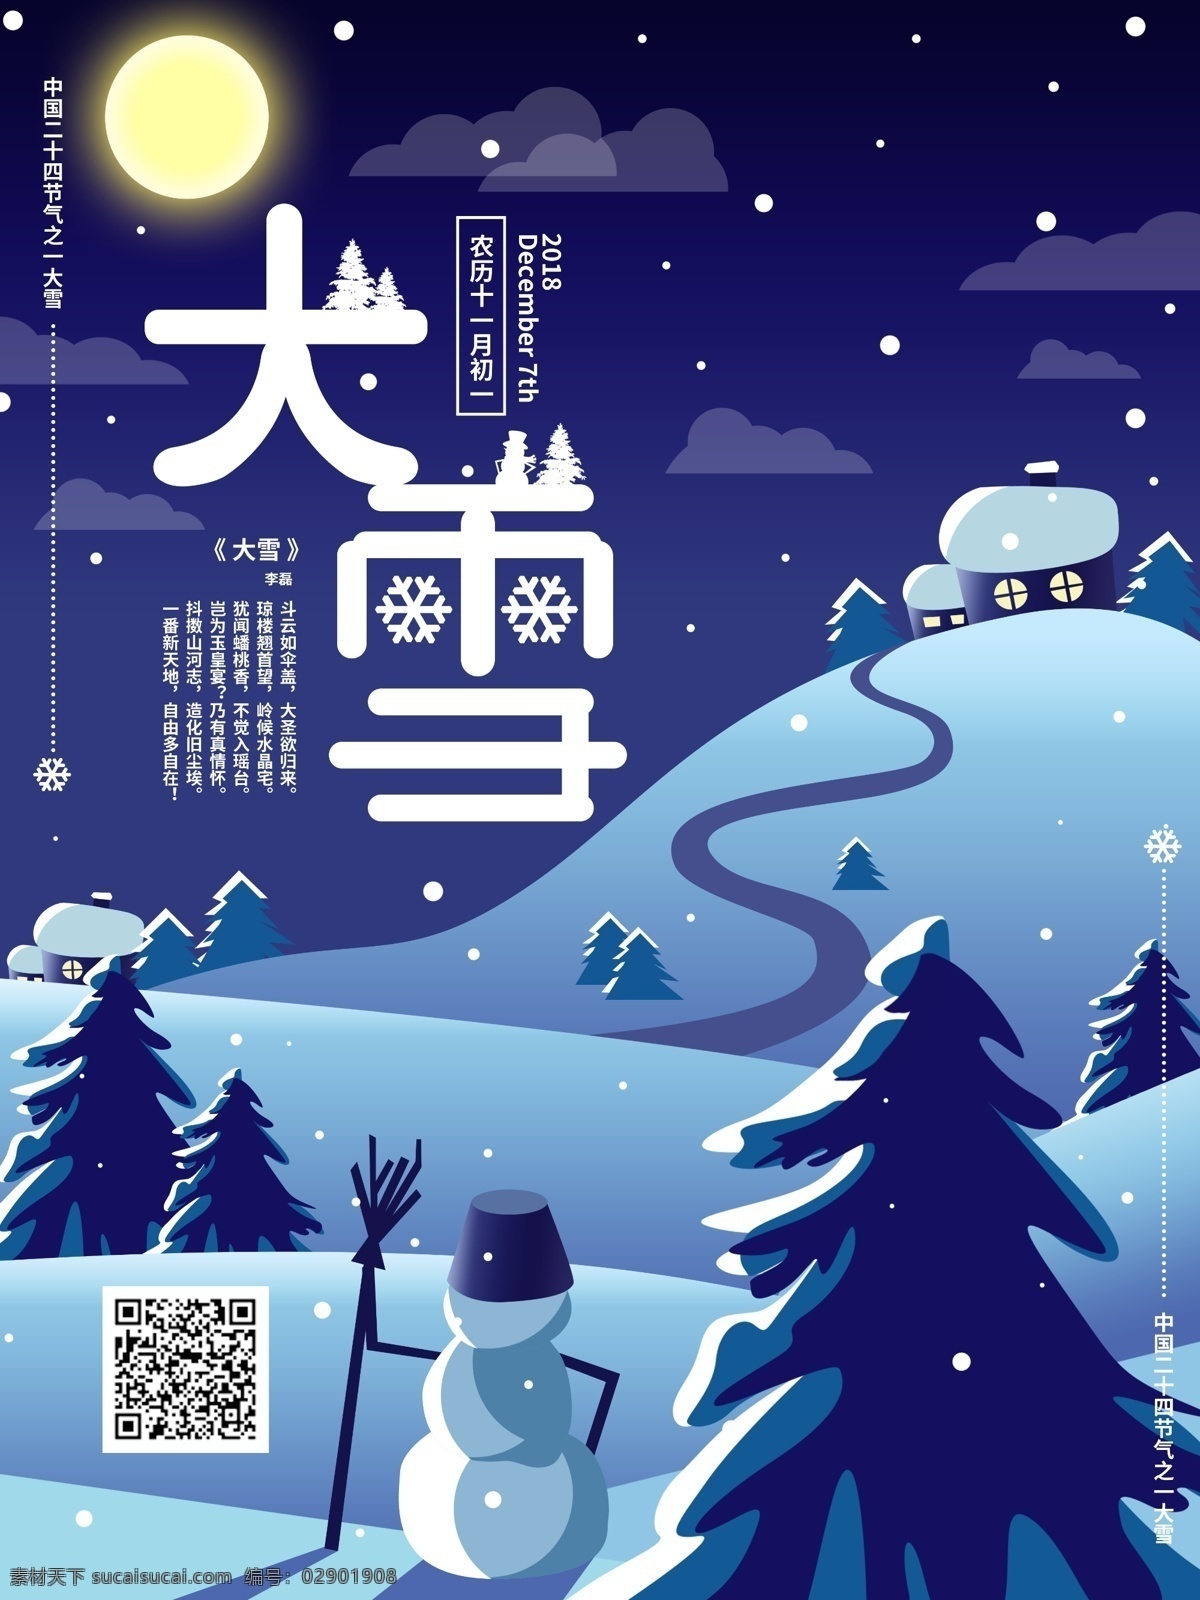 简约 冬夜 雪人 大雪 海报 模版 二十四节气 冬天 中国节气 雪夜 树